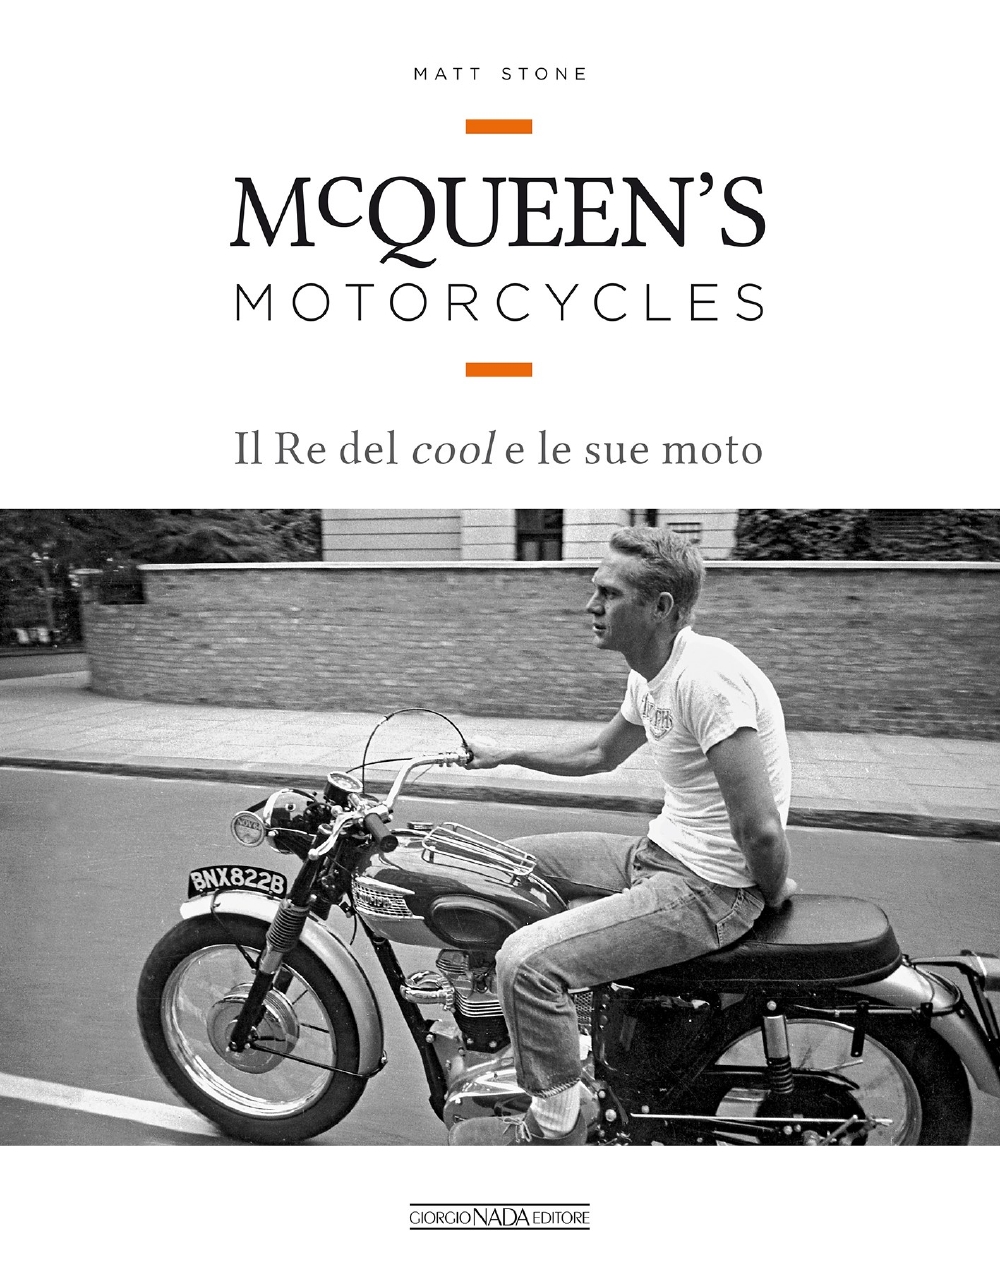 McQueen's motorcycles